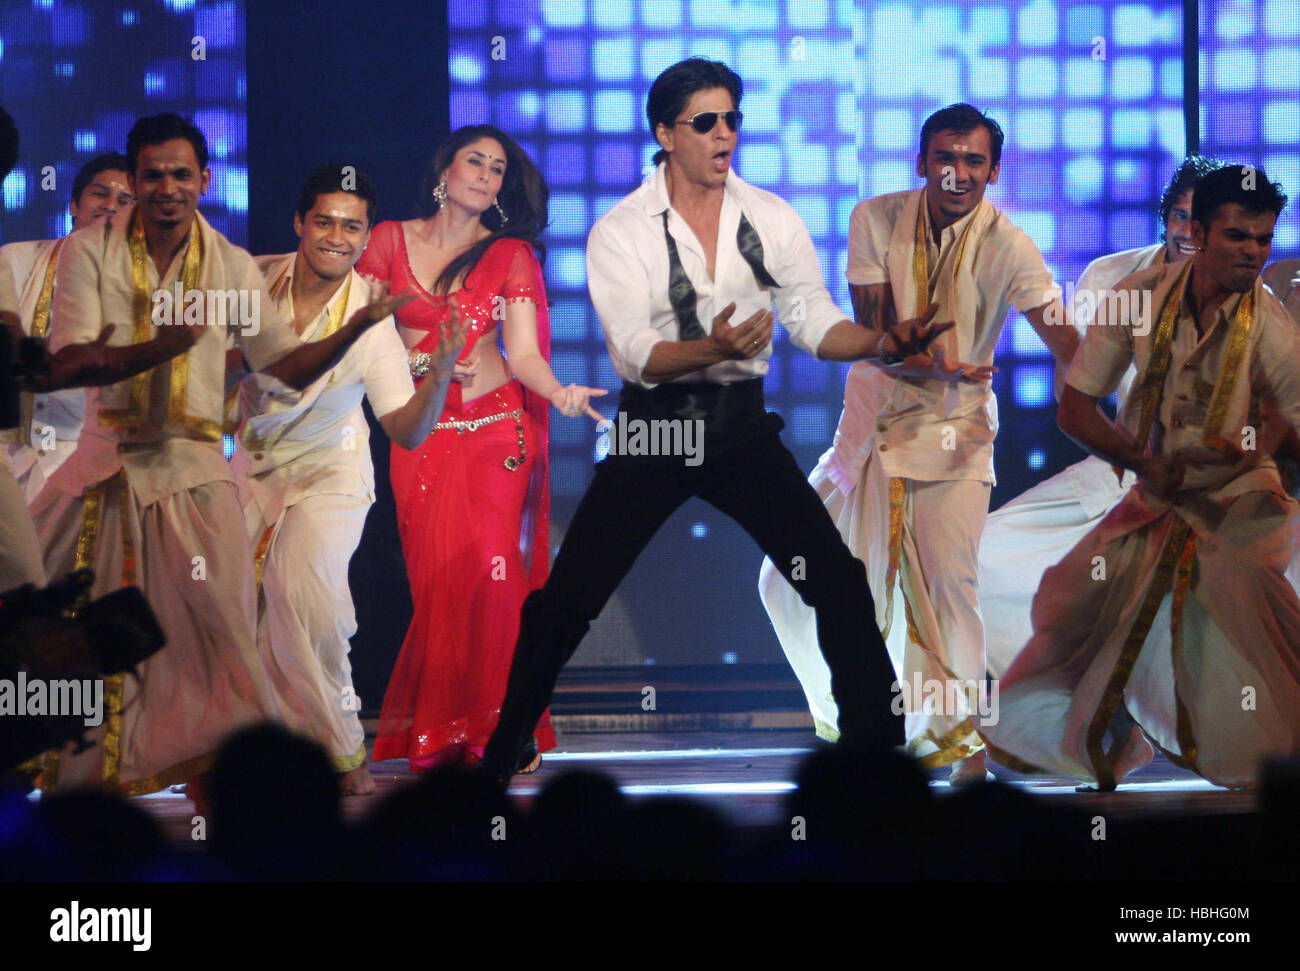 Shah Rukh Khan, indischer Bollywood-Schauspieler, der mit der Schauspielerin Kareena Kapoor zur Filmförderung Ra.one in der Filmstadt in Mumbai Indien tanzt Stockfoto